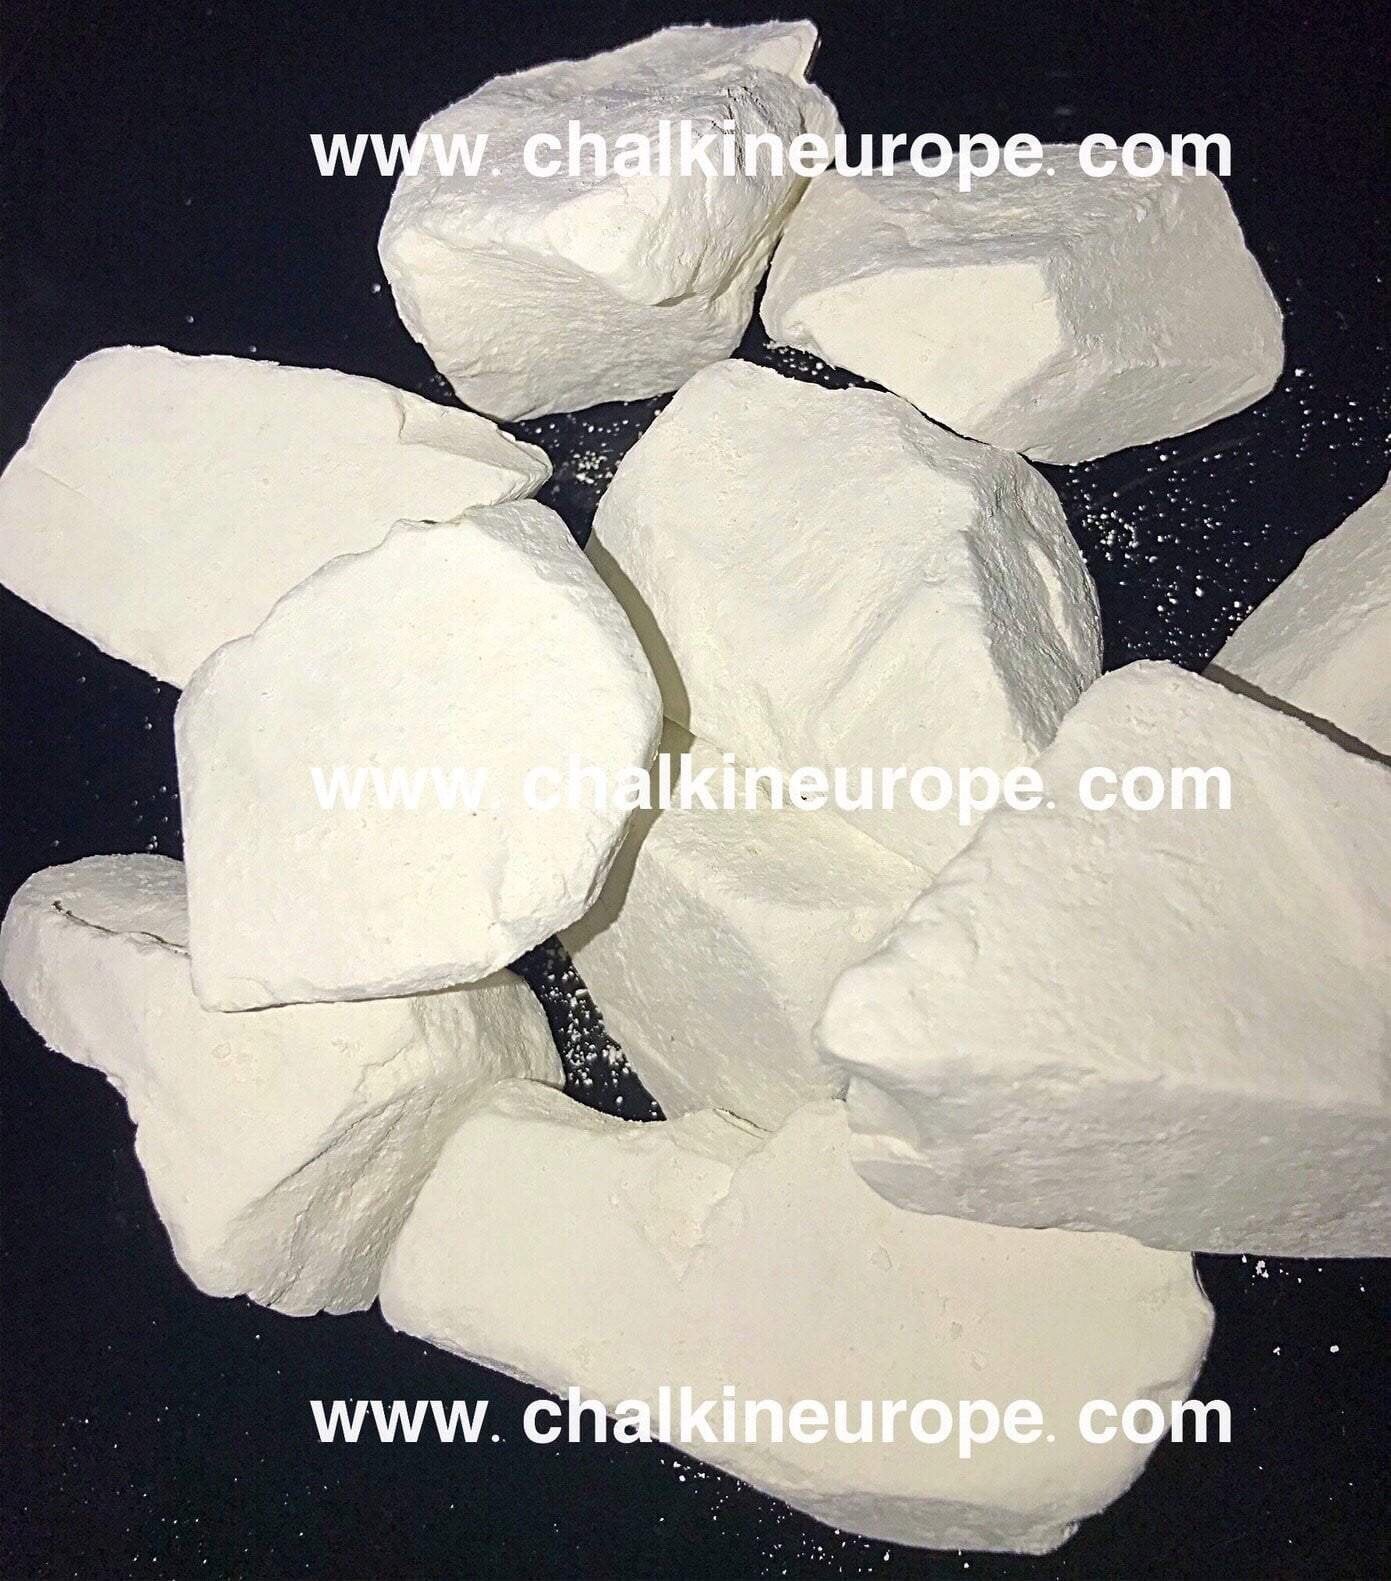 Crunchy Edible Chalk - Belgorod Chalk Chunks - Bone Strength